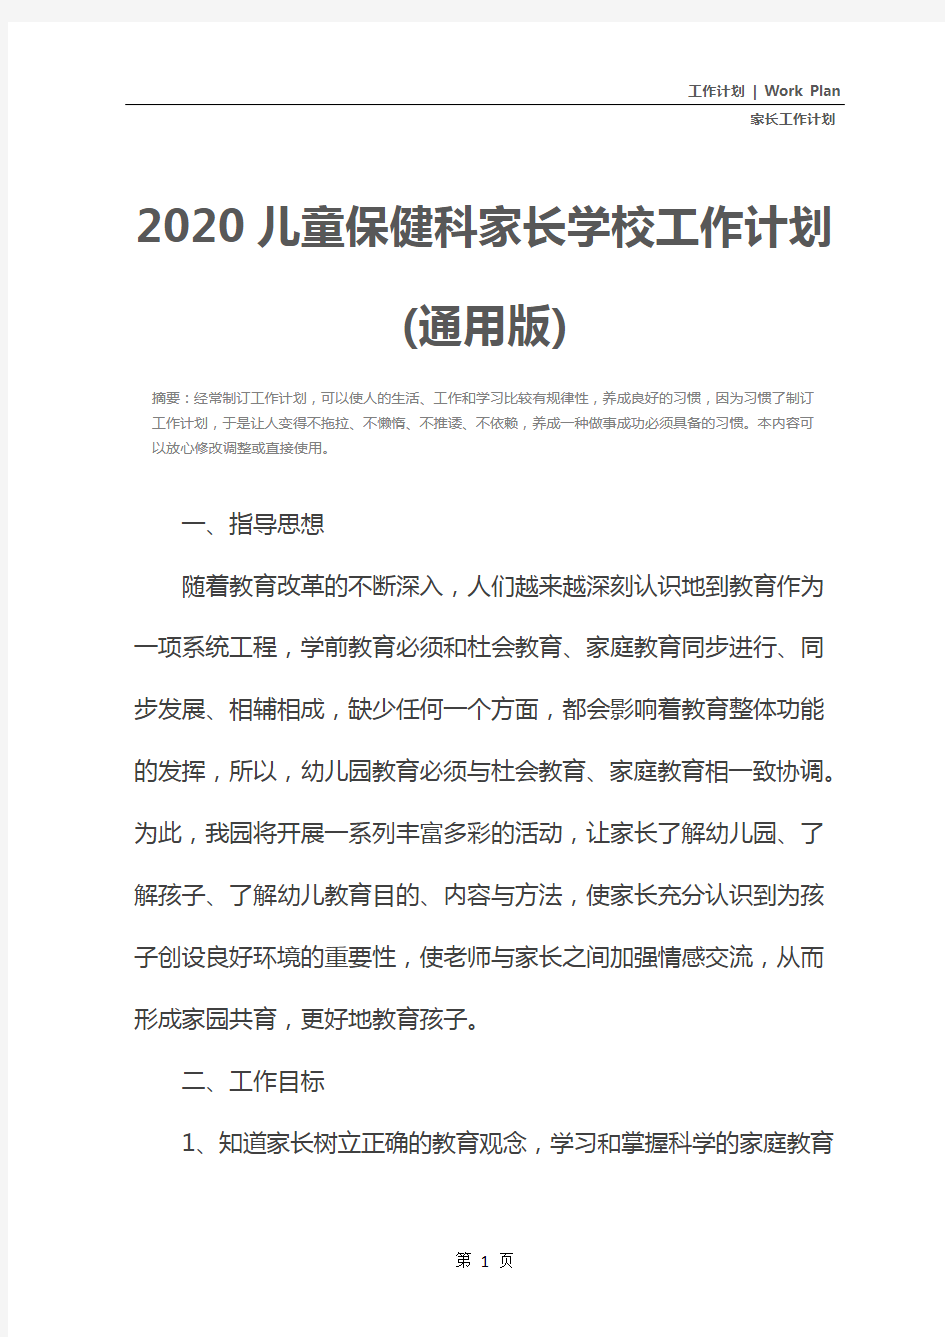 2020儿童保健科家长学校工作计划(通用版)